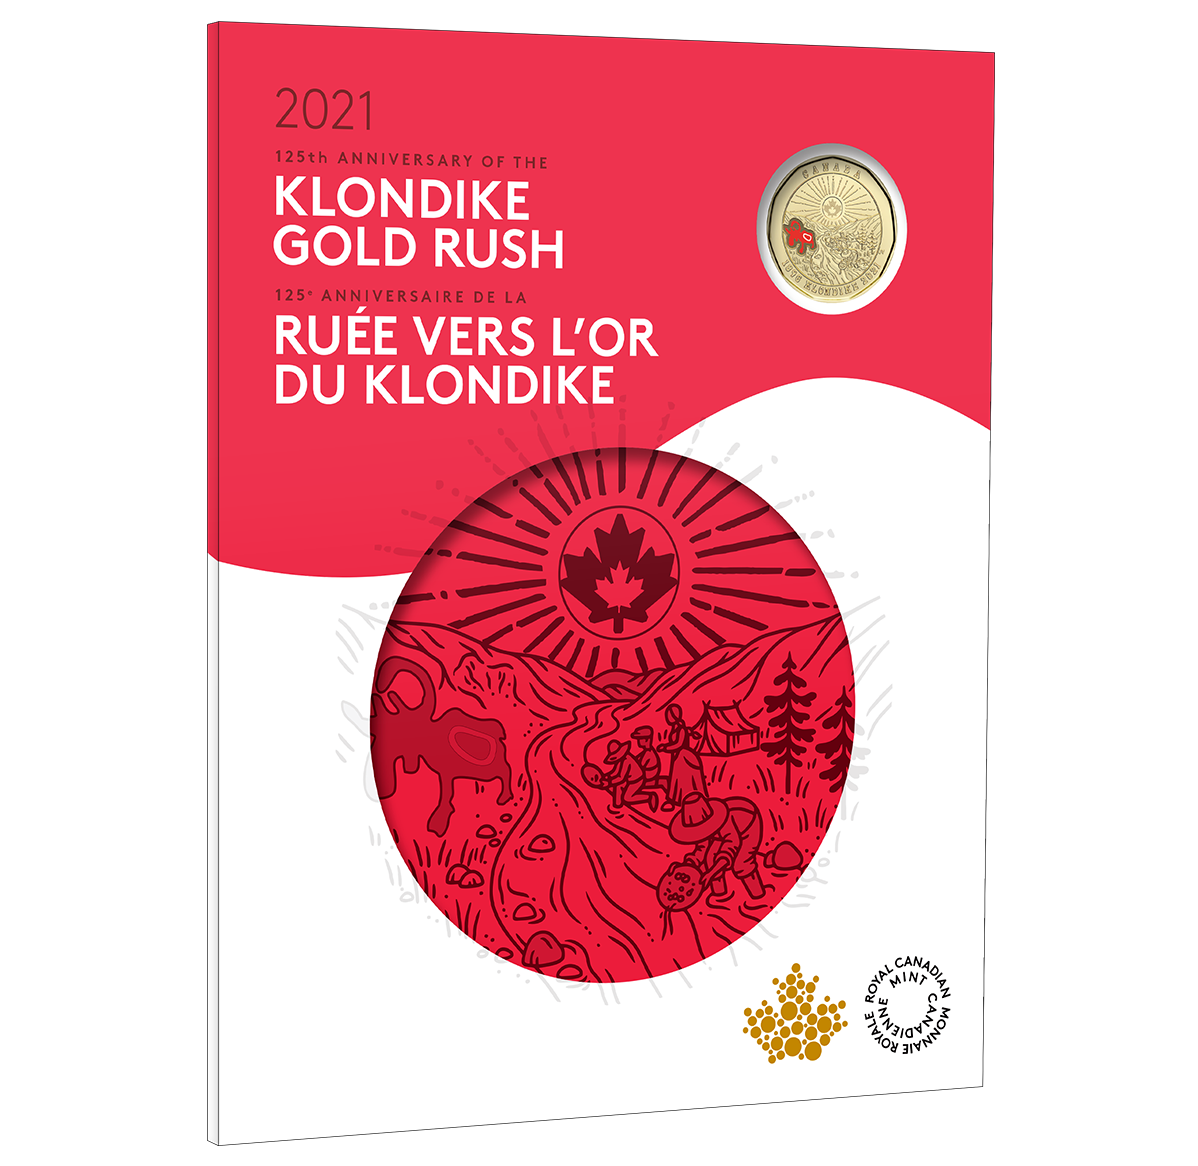 125th Anniversary of the Klondike Gold Rush